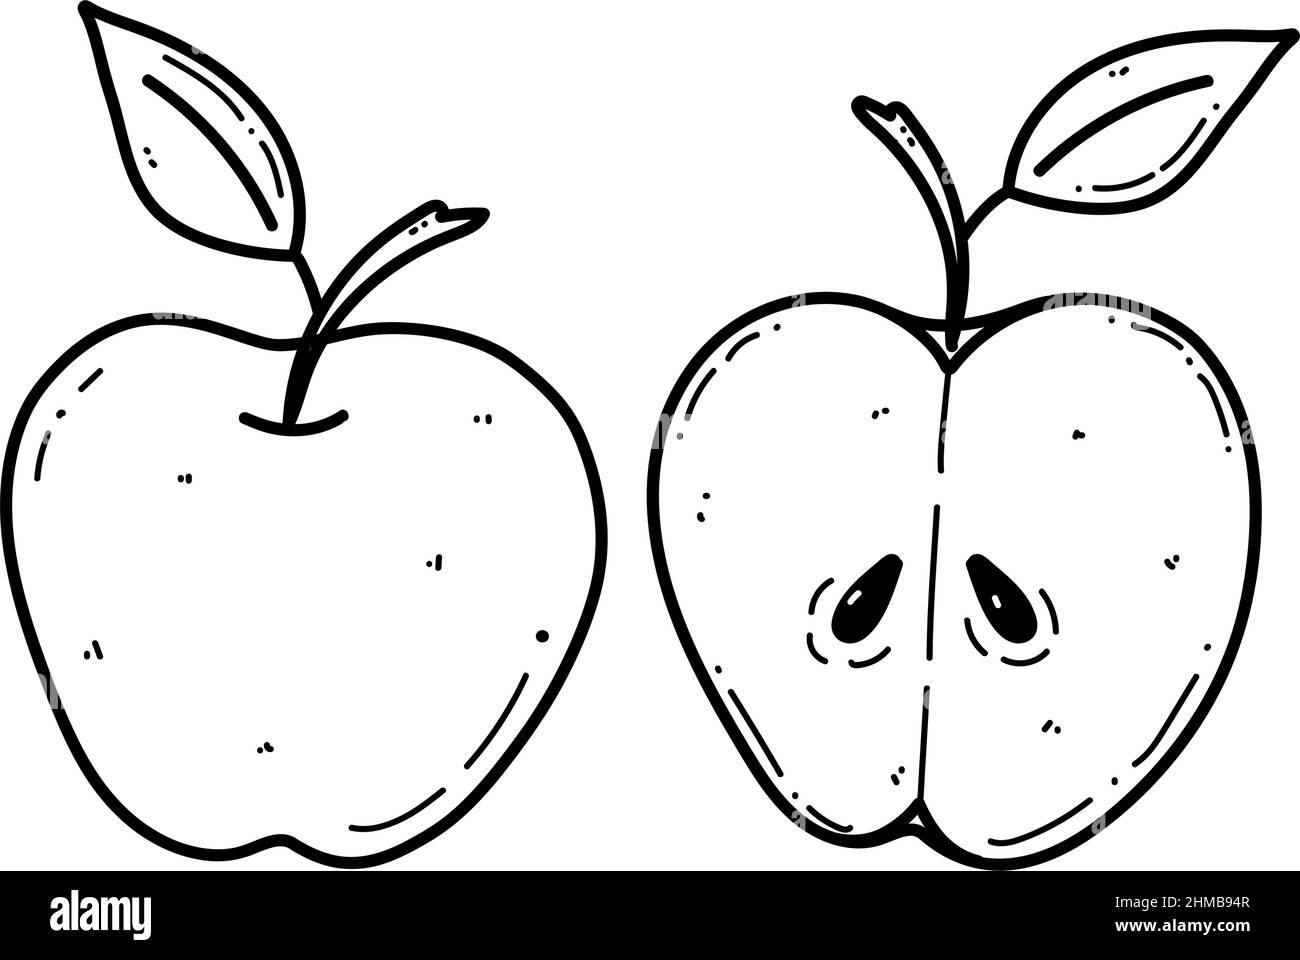 Illustrazione del doodle della mela vettoriale. Illustrazione della frutta per il menu del mercato agricolo. Progettazione di alimenti sani Illustrazione Vettoriale